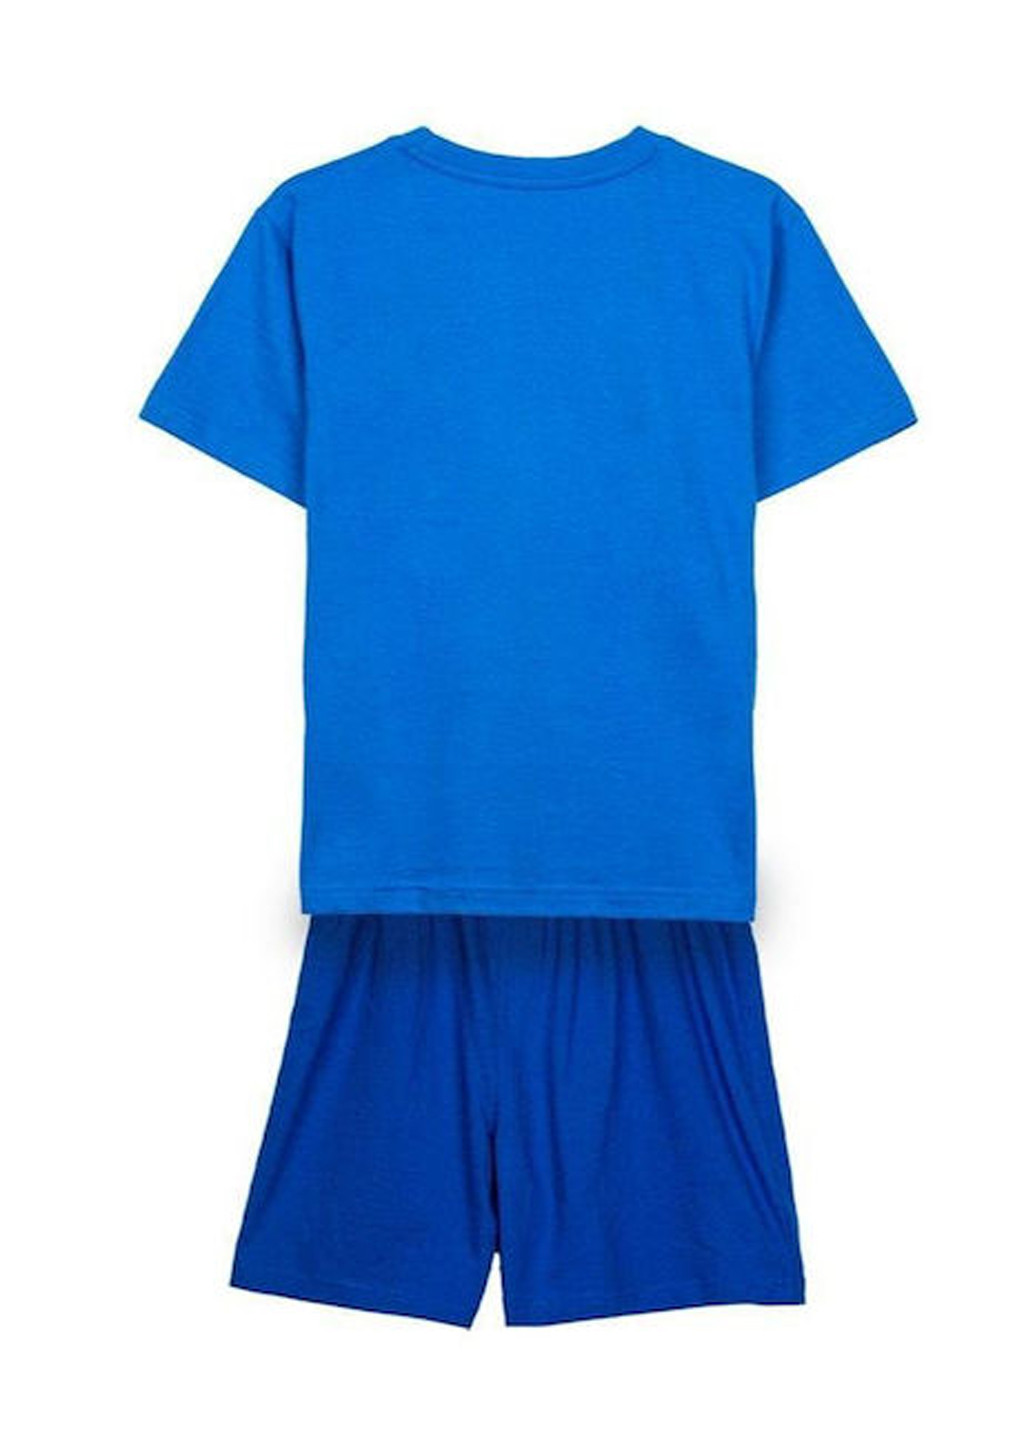 Синяя всесезон пижама (футболка, шорты) футболка + шорты Cerda